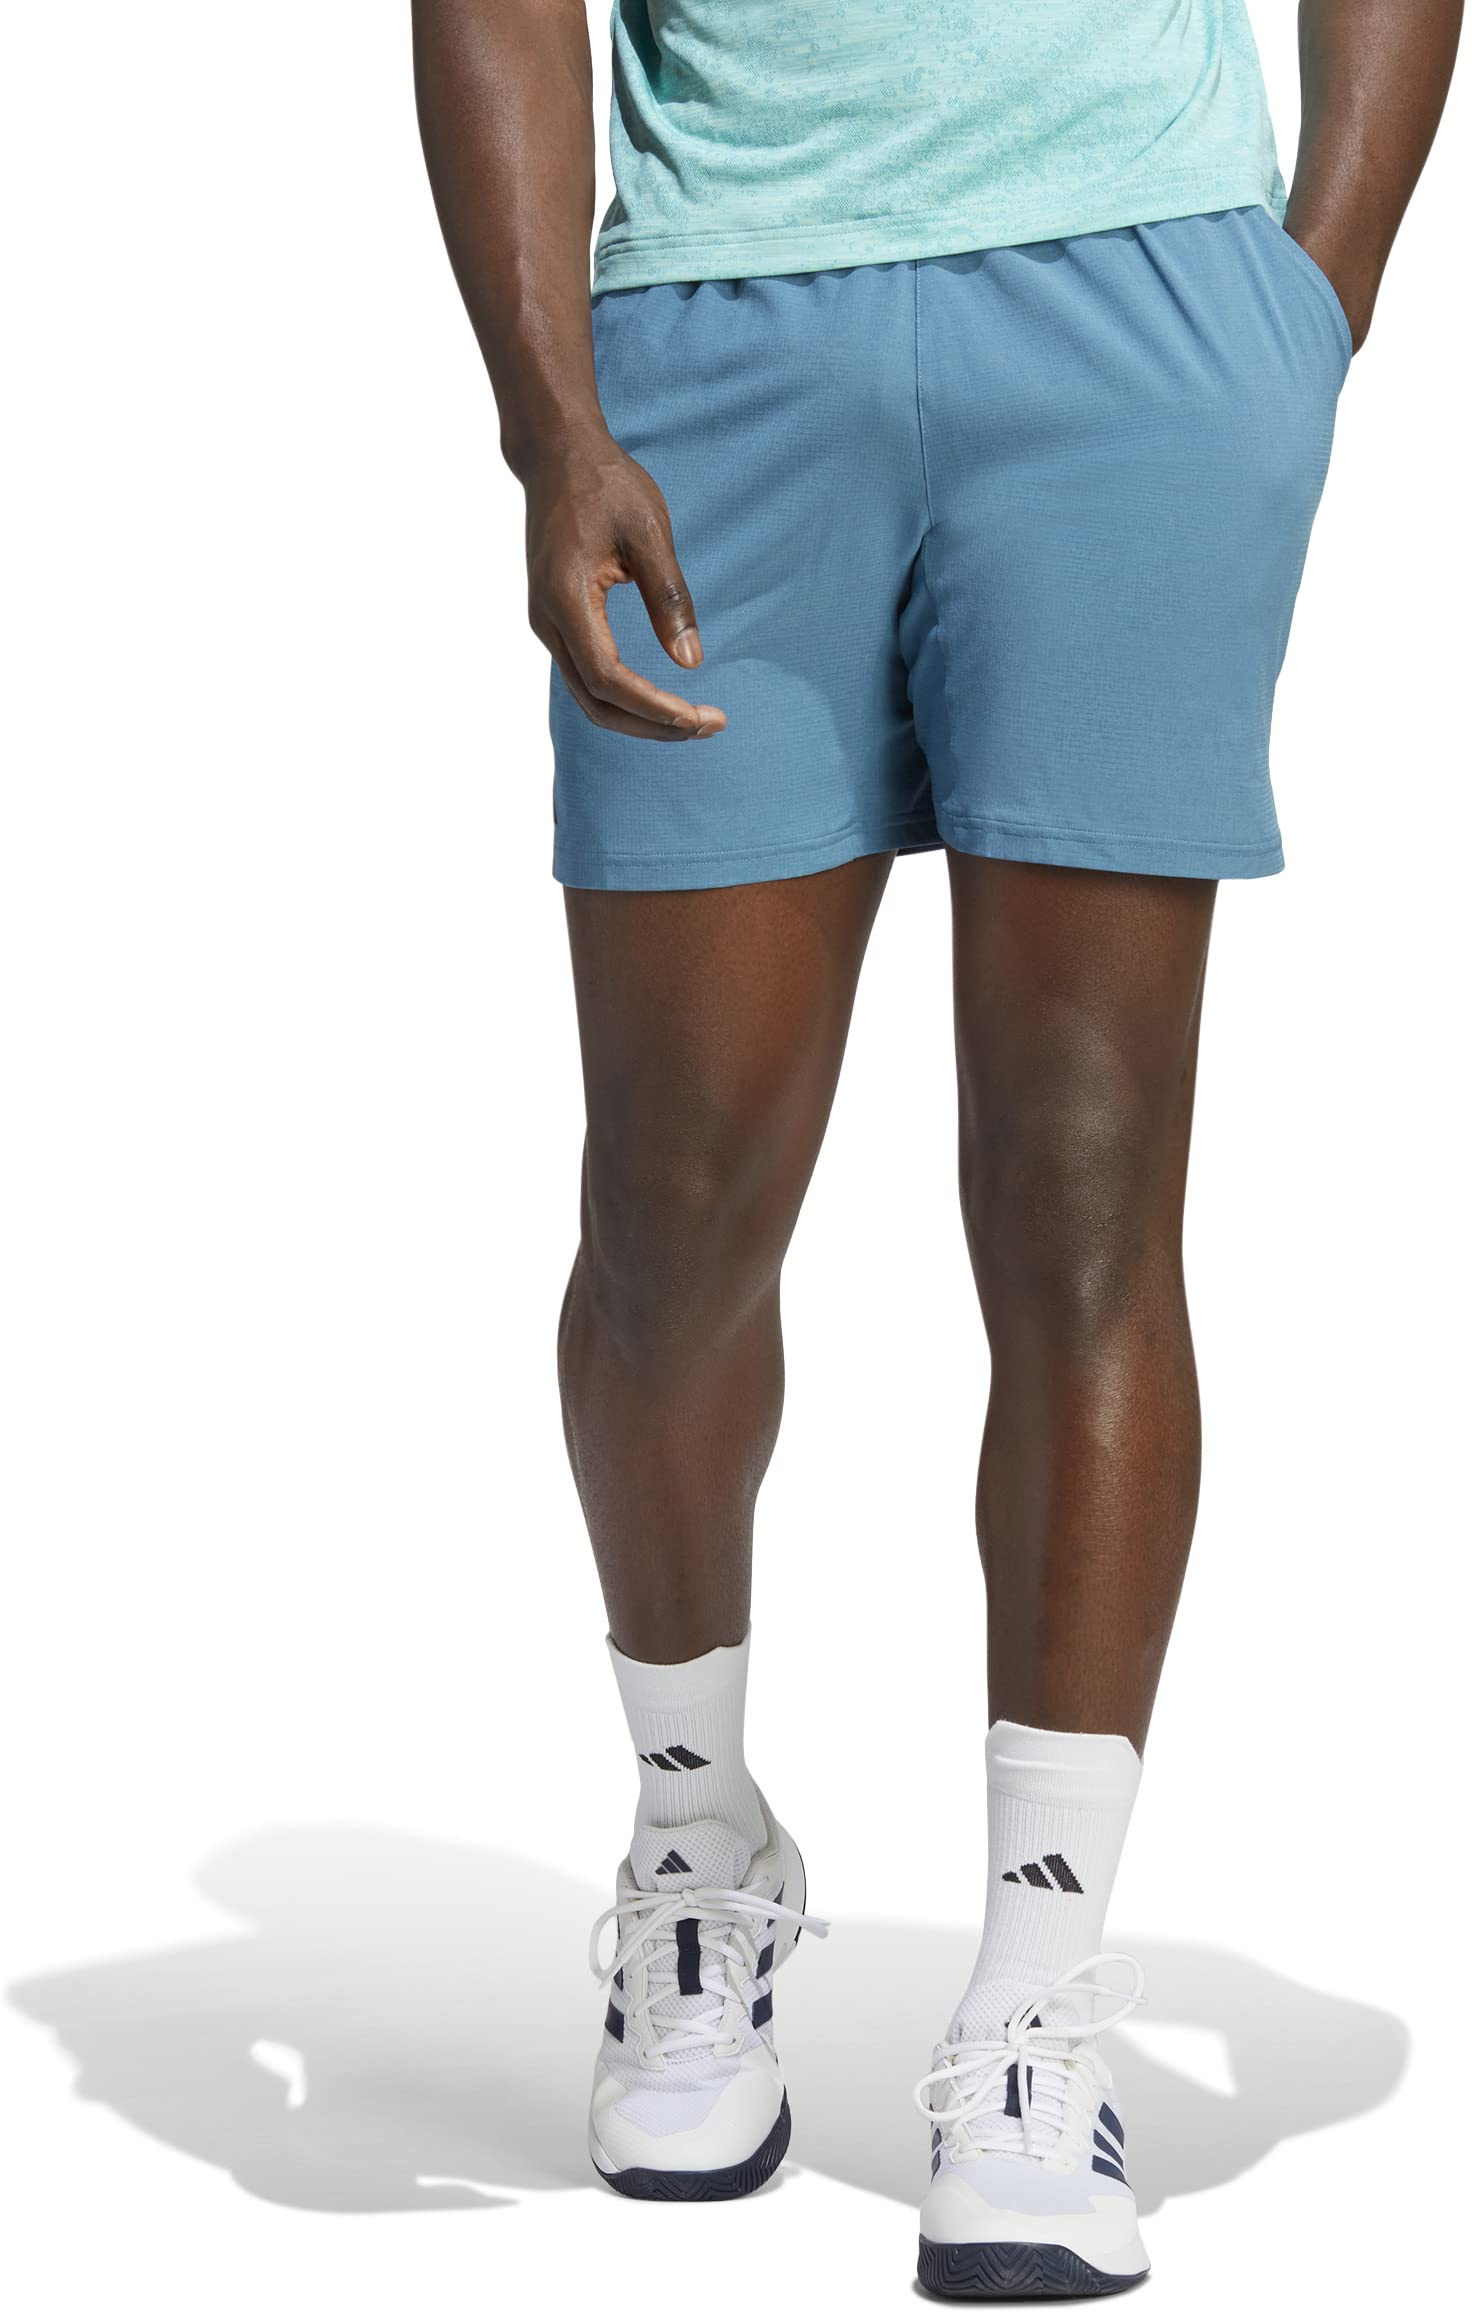 Теннисные шорты Ergo 9 дюймов Adidas